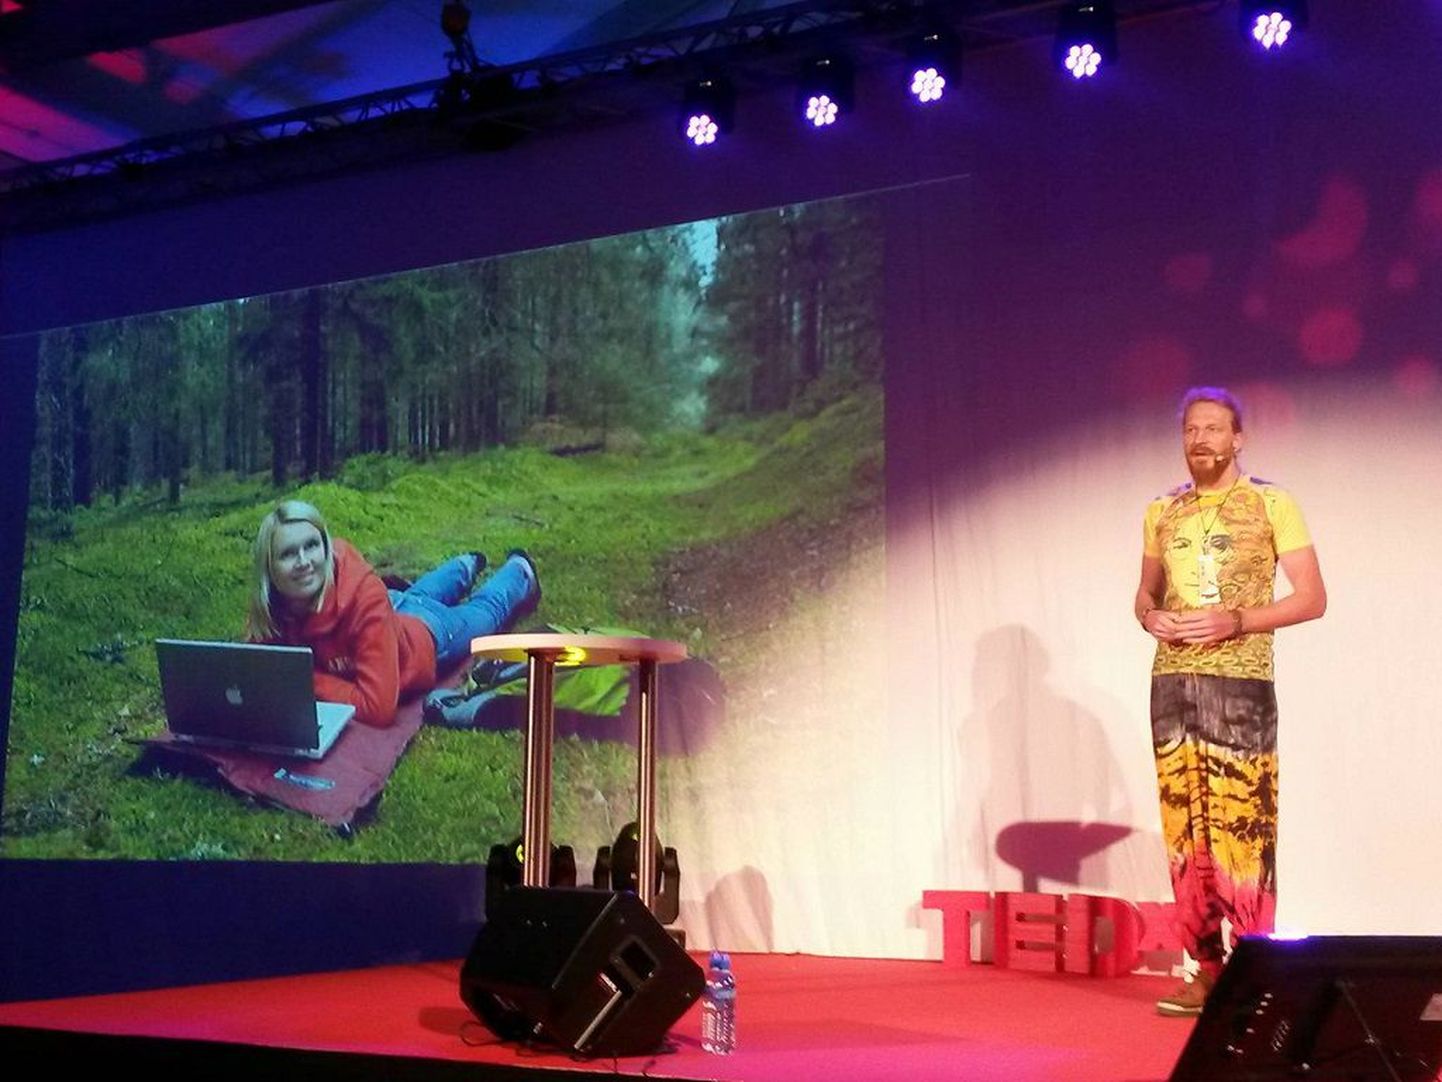 Programmeerija Anton Keks, üks Codeborne firma asutajatest rääkis TEDx Lasnamäel digitaalse elu kasuteguritest.